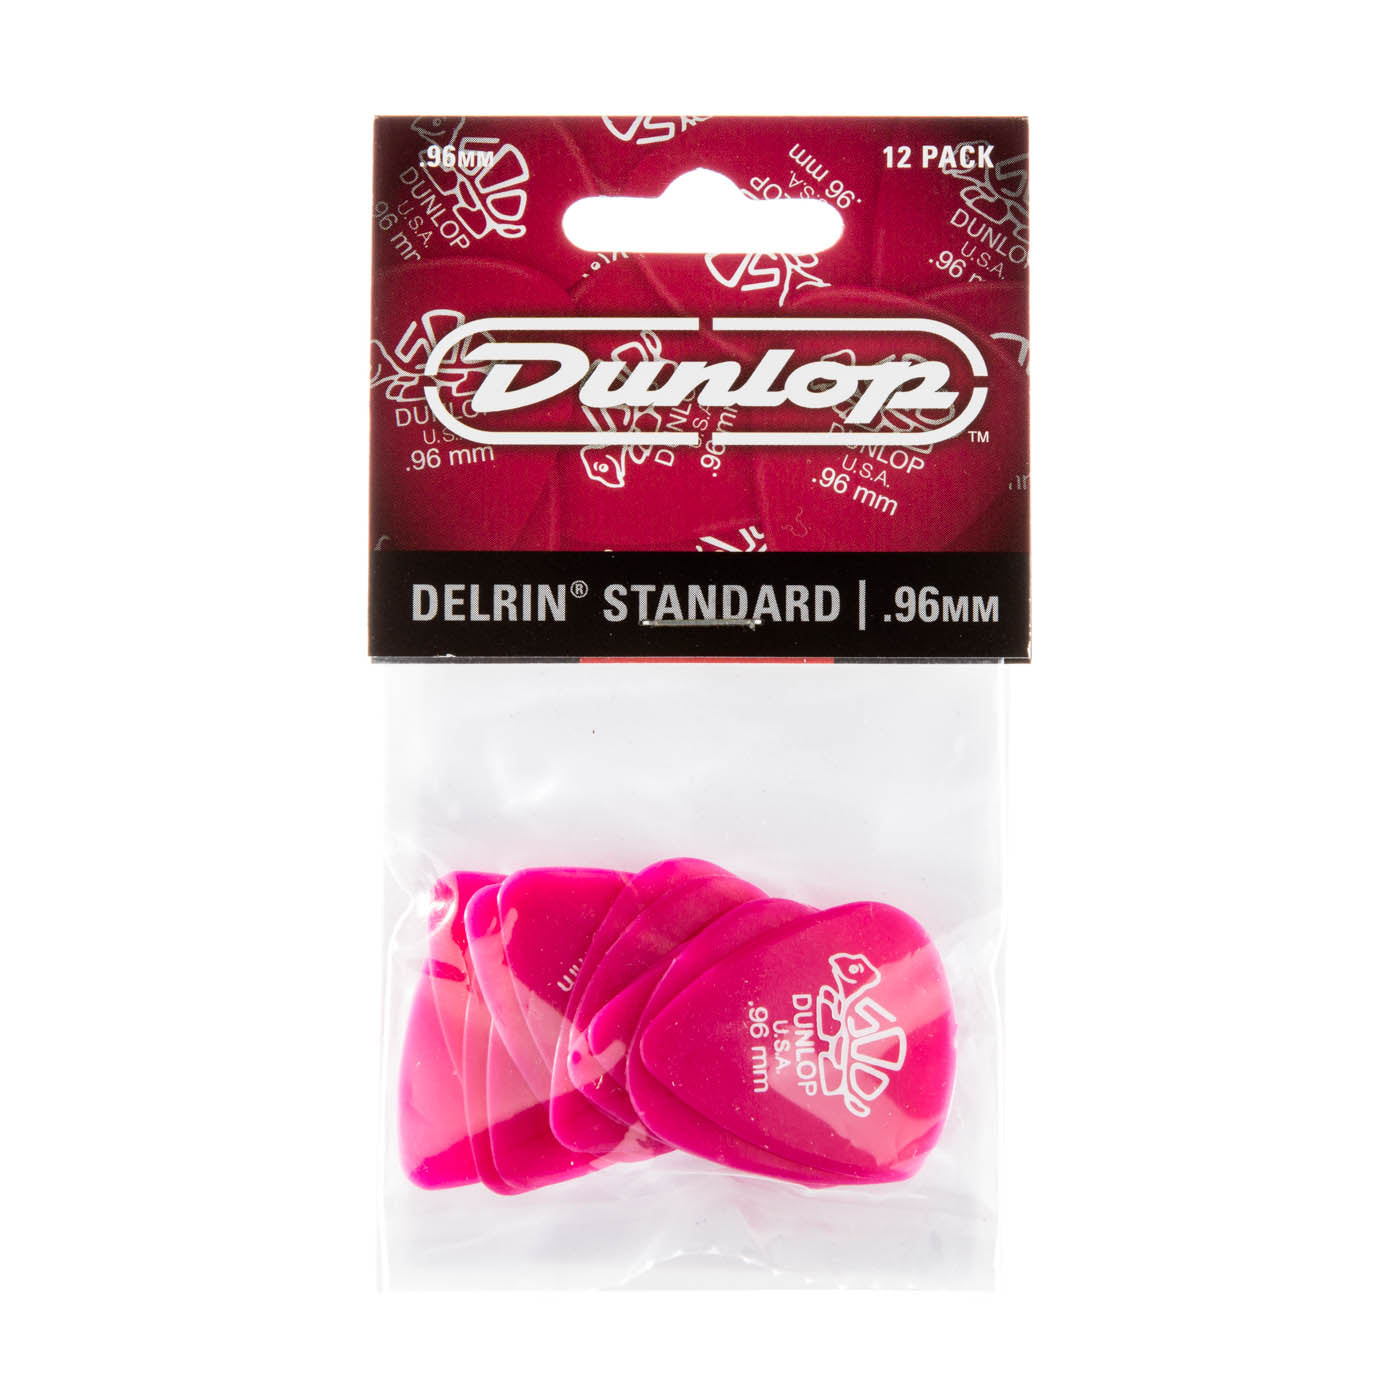 Dunlop 0.96mm Delrin 500 Guitar Pick (12/Pack)